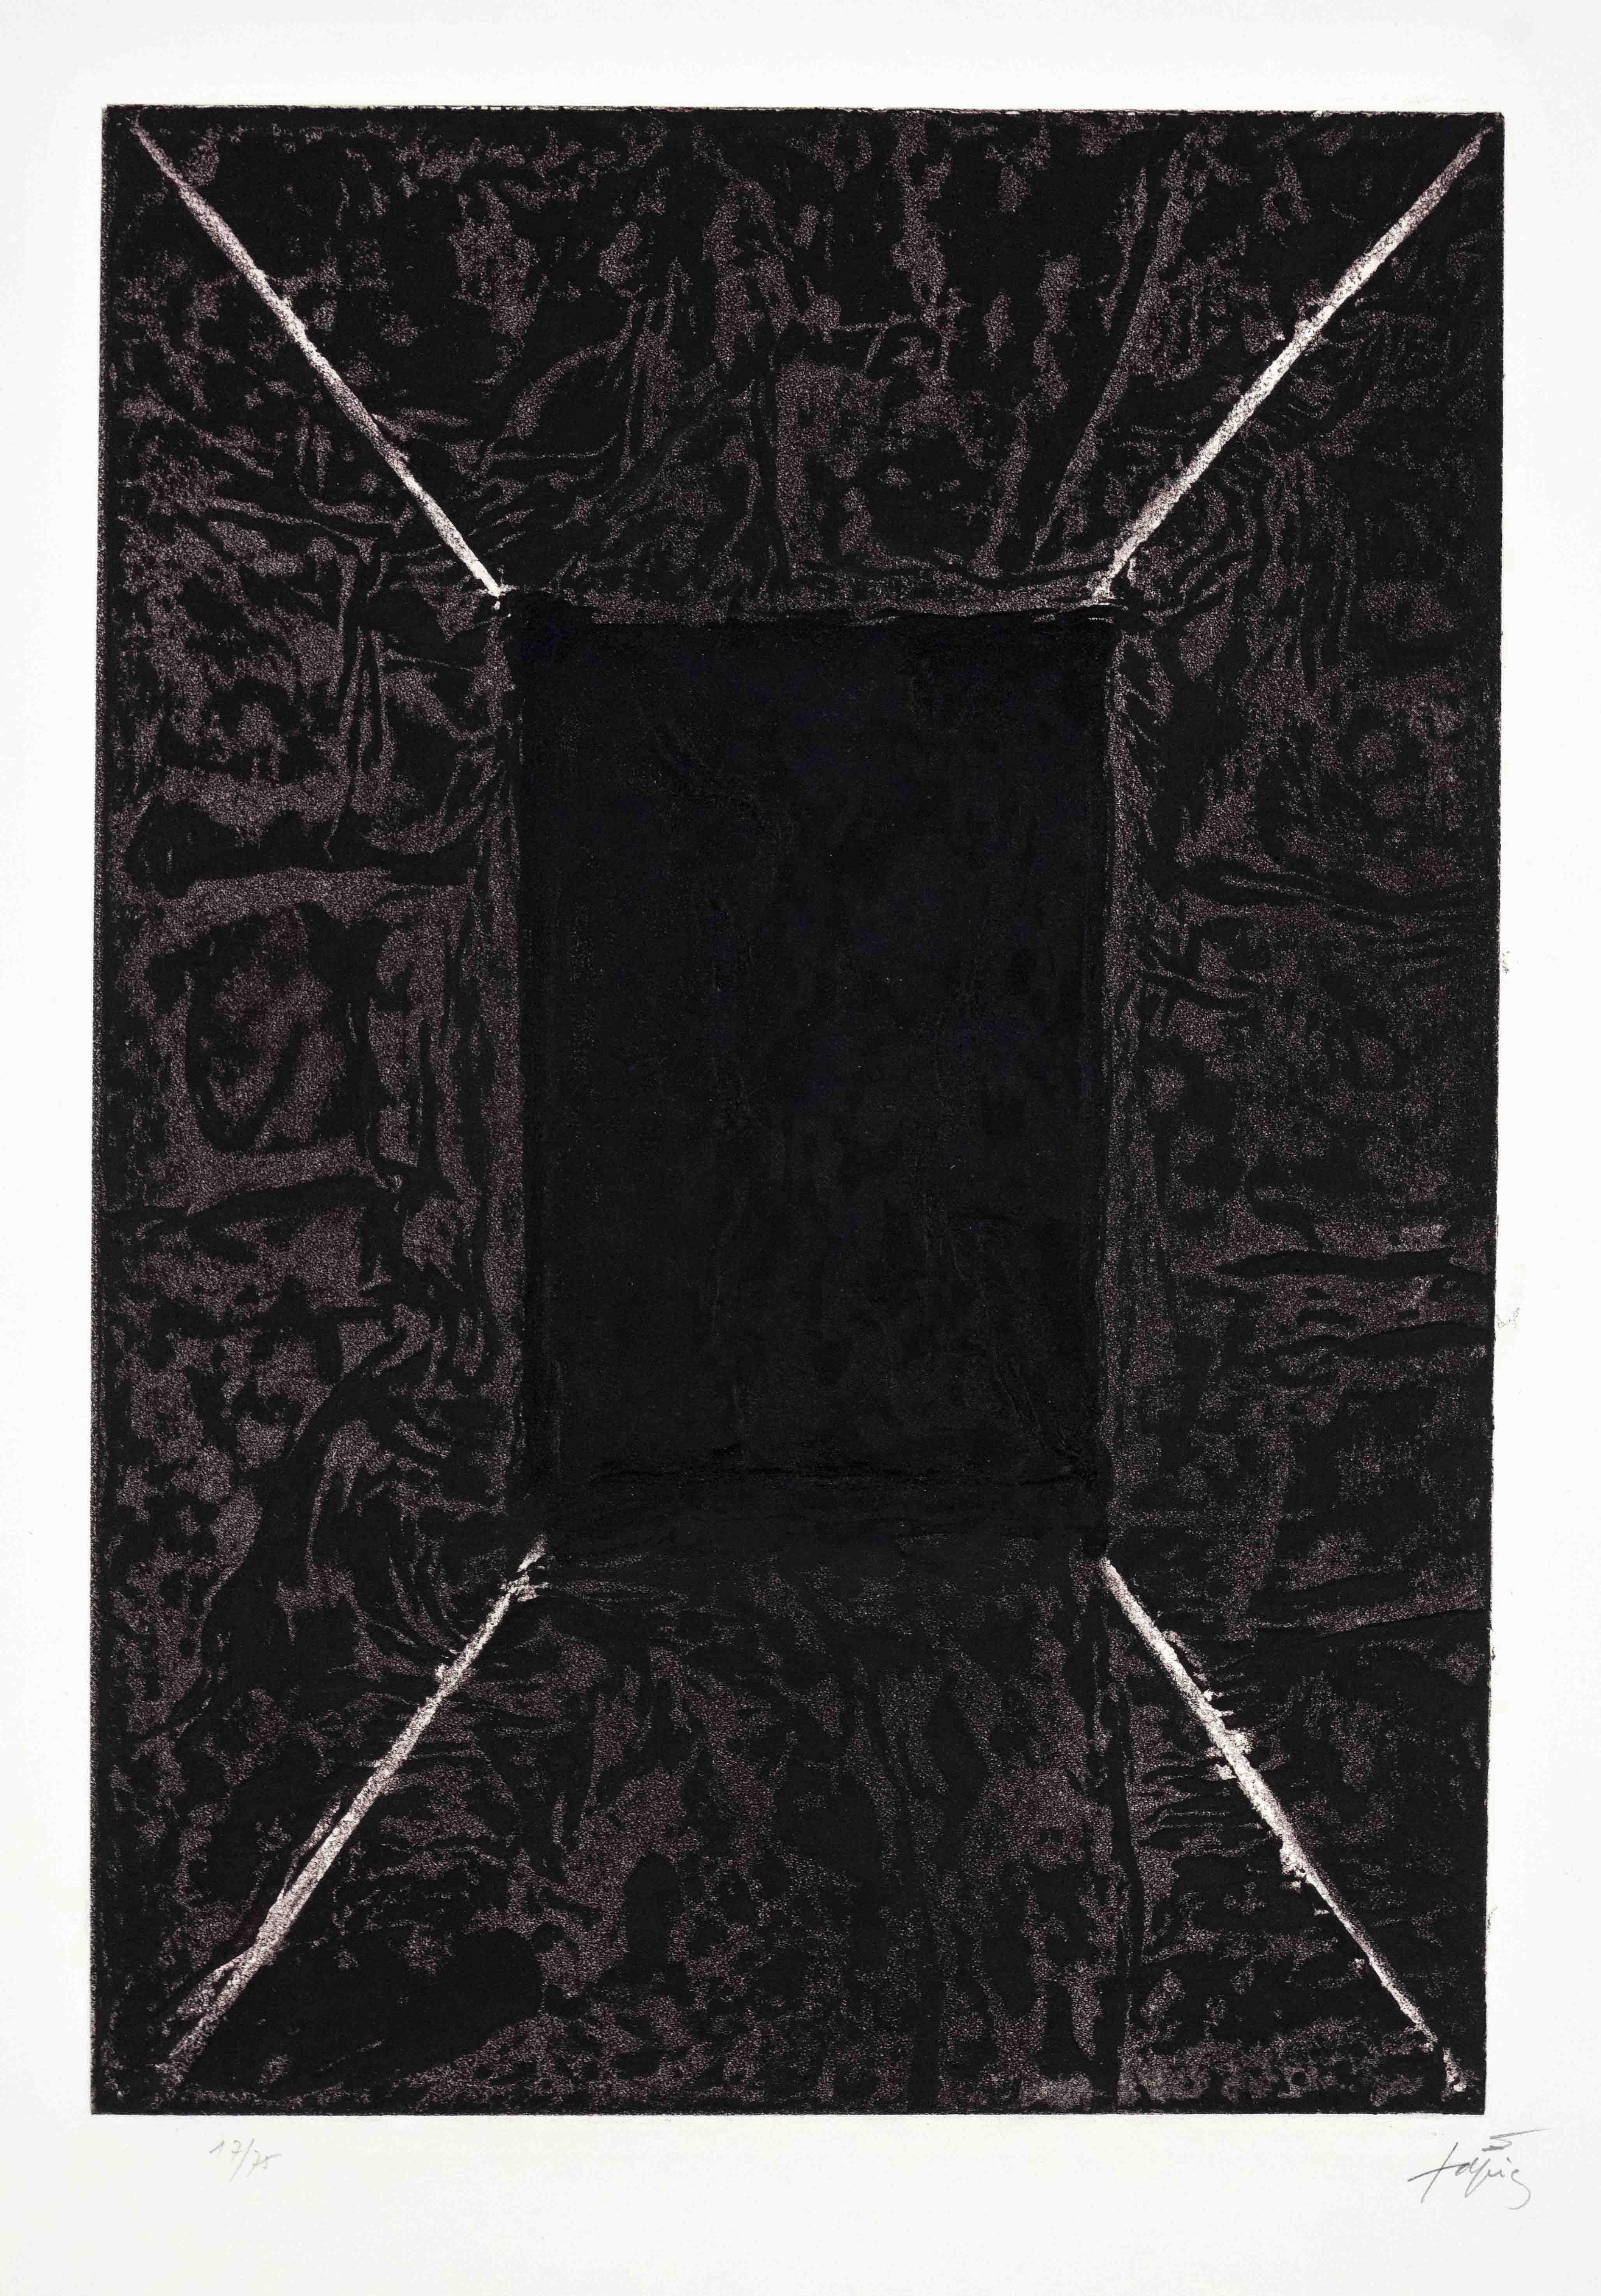 Antoni Tàpies Interior Print - "La porte" Abstract Contemporary Door Dark Brown Hole Black Space Profoundness